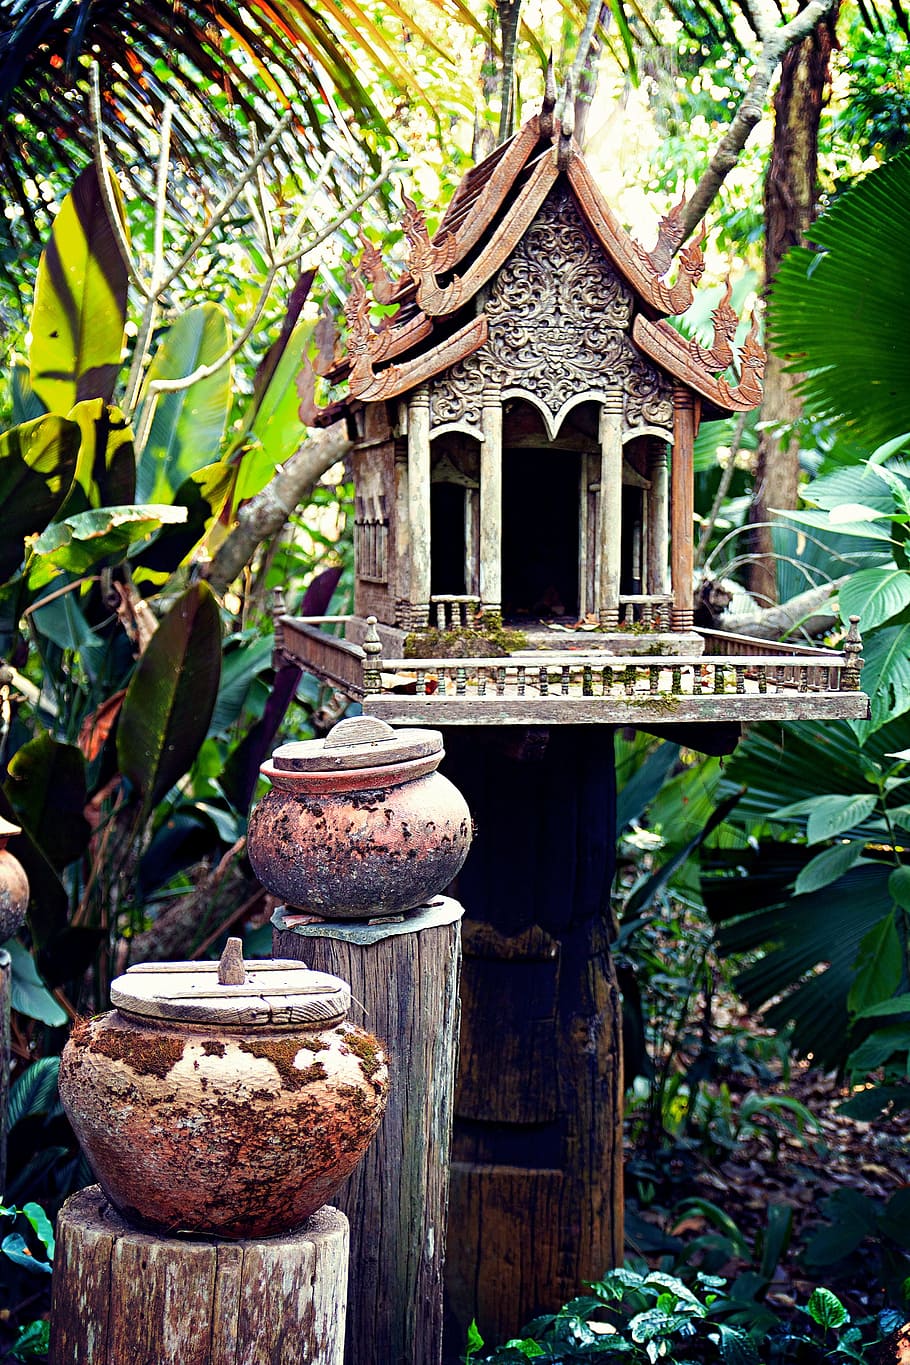 Chiang Rai, Thailand, Asia, Cottage, chiang rai, thailand, park, stone house, jugs, pile, temple | Pxfuel